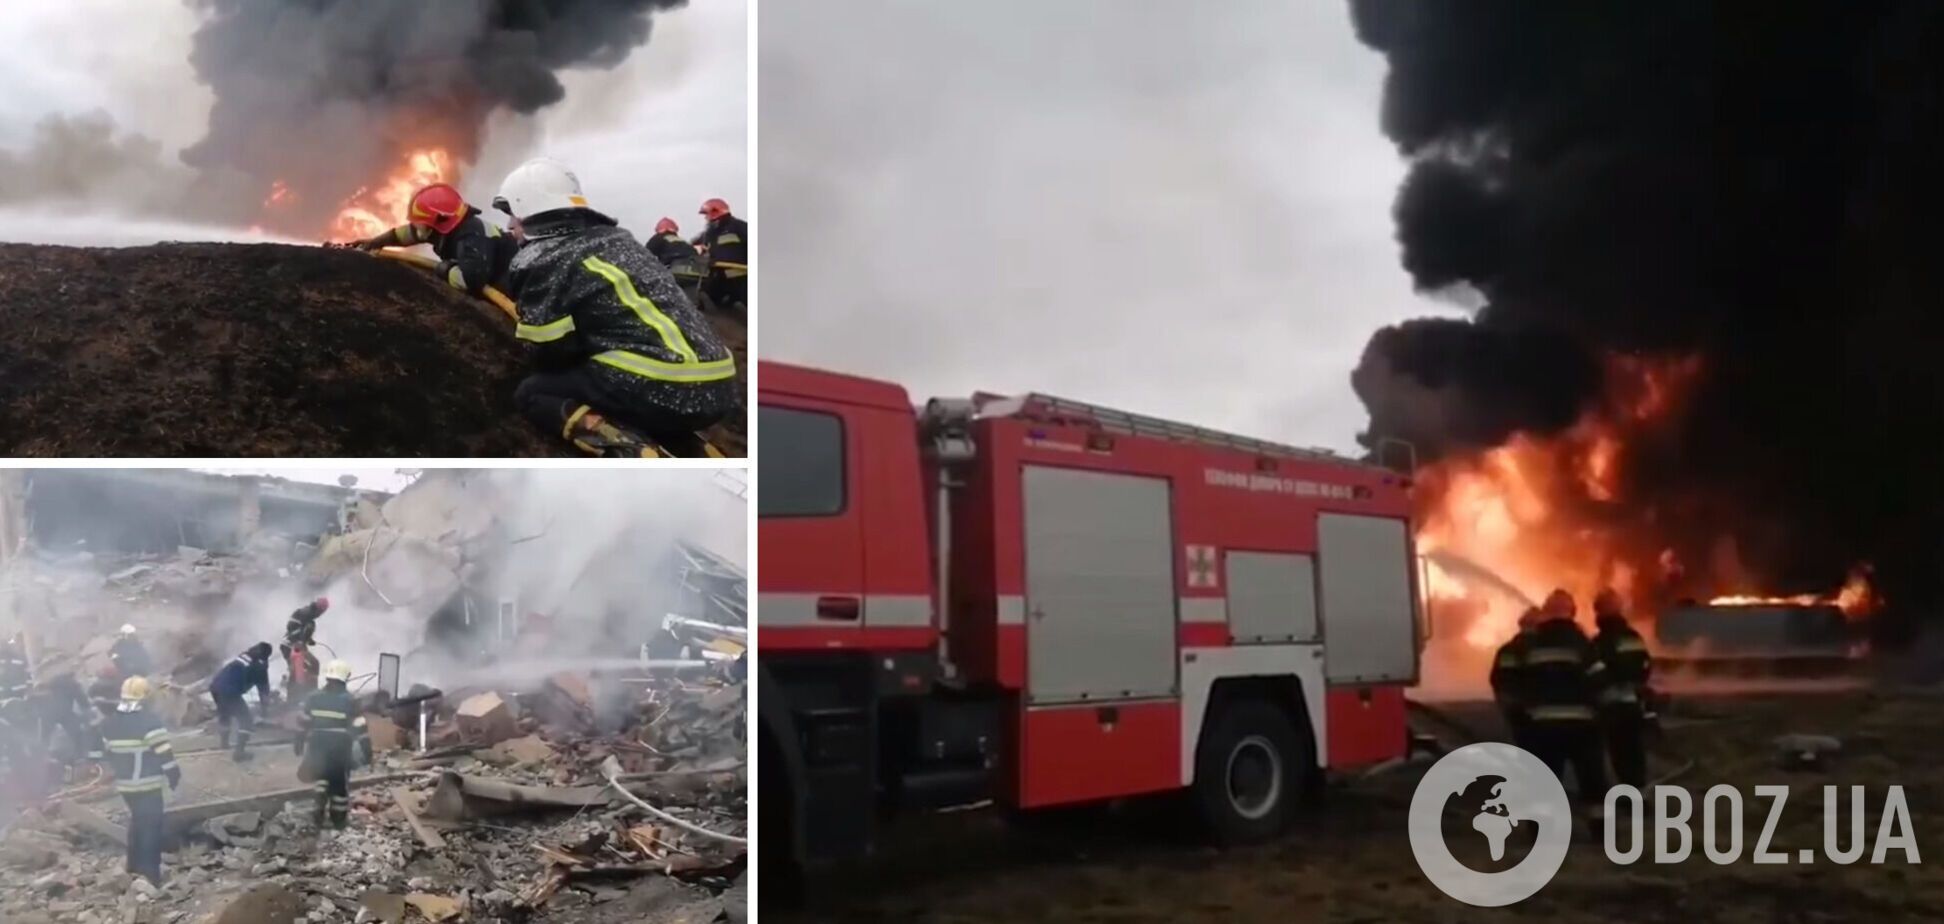 На Винниччине из-за ракетного удара возник пожар на складе ГСМ: один человек погиб, трех спасли из под завалов. Видео